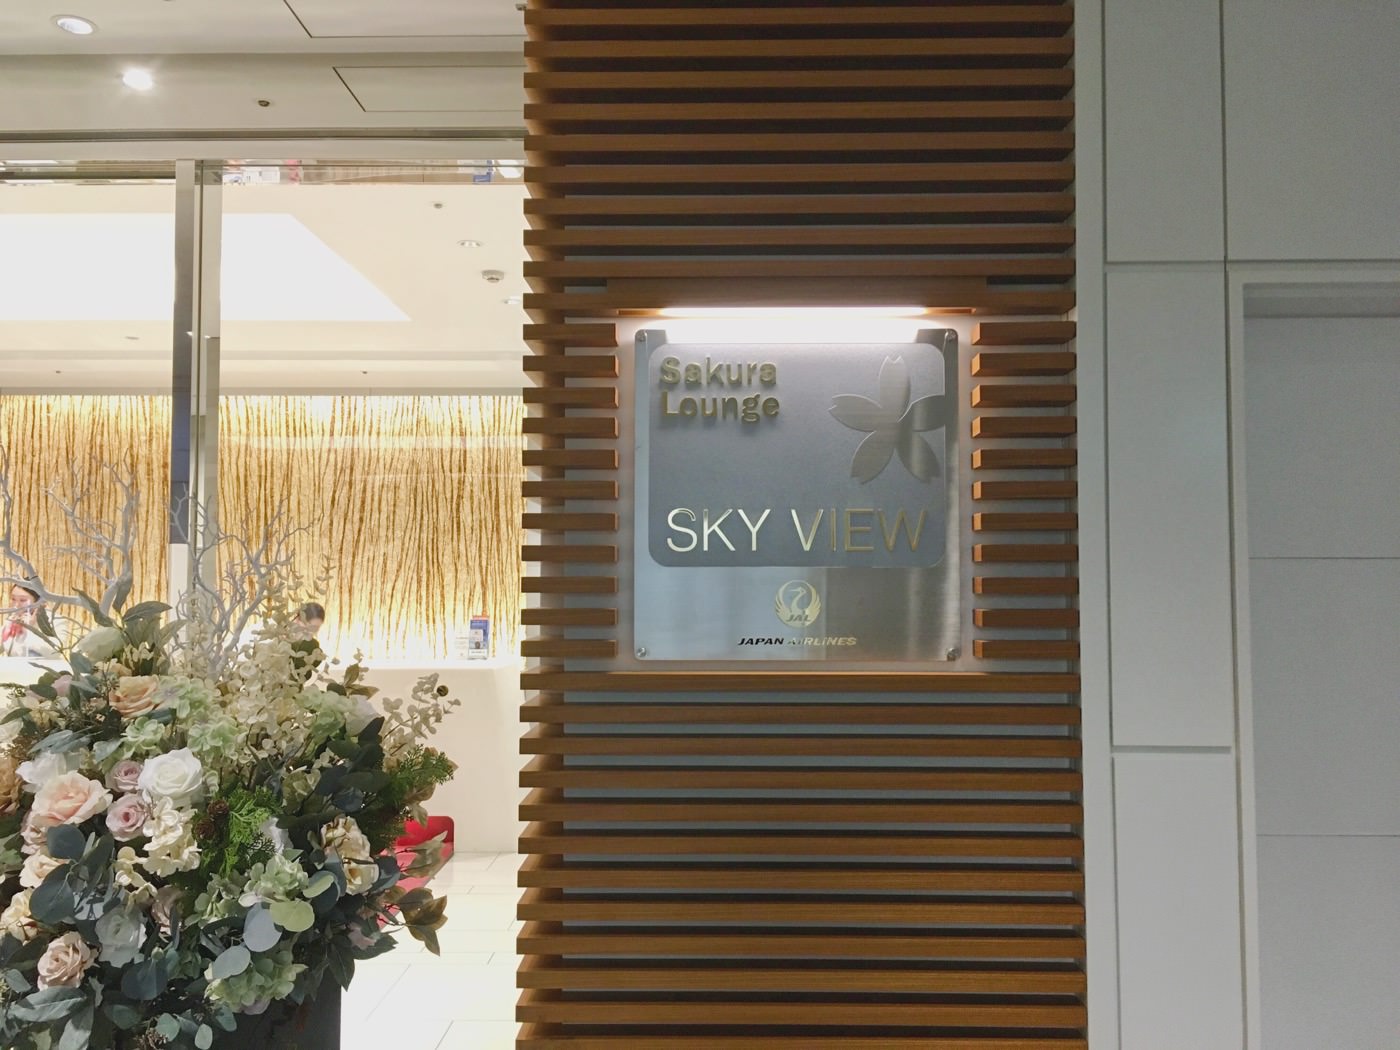 貴賓室 日本東京 羽田機場 日航 Sakura Lounge Skyview 臨時頭等貴賓室 - 一口冒險 Bitesized Adventure